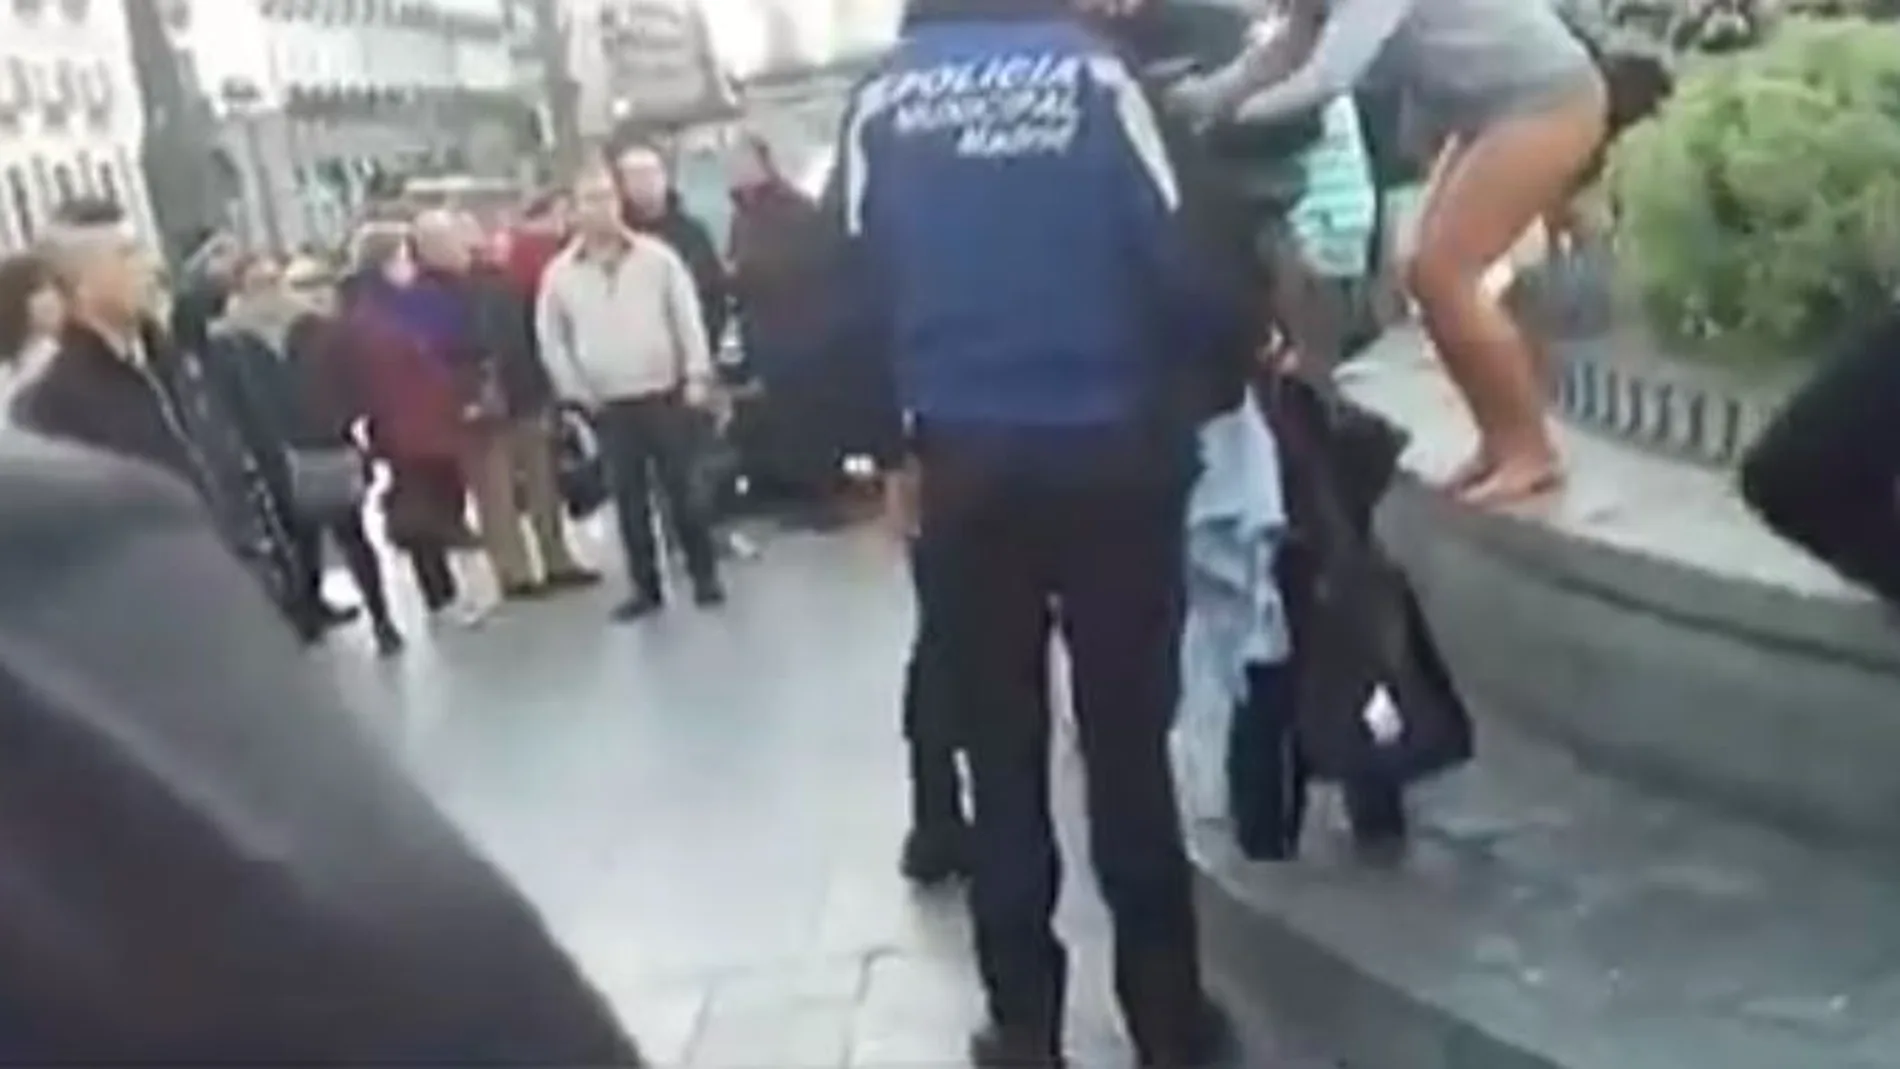 Captura del vídeo divulgado por Telemadrid en el que se puede ver a la mujer saliendo de la fuente en presencia de agentes municipales